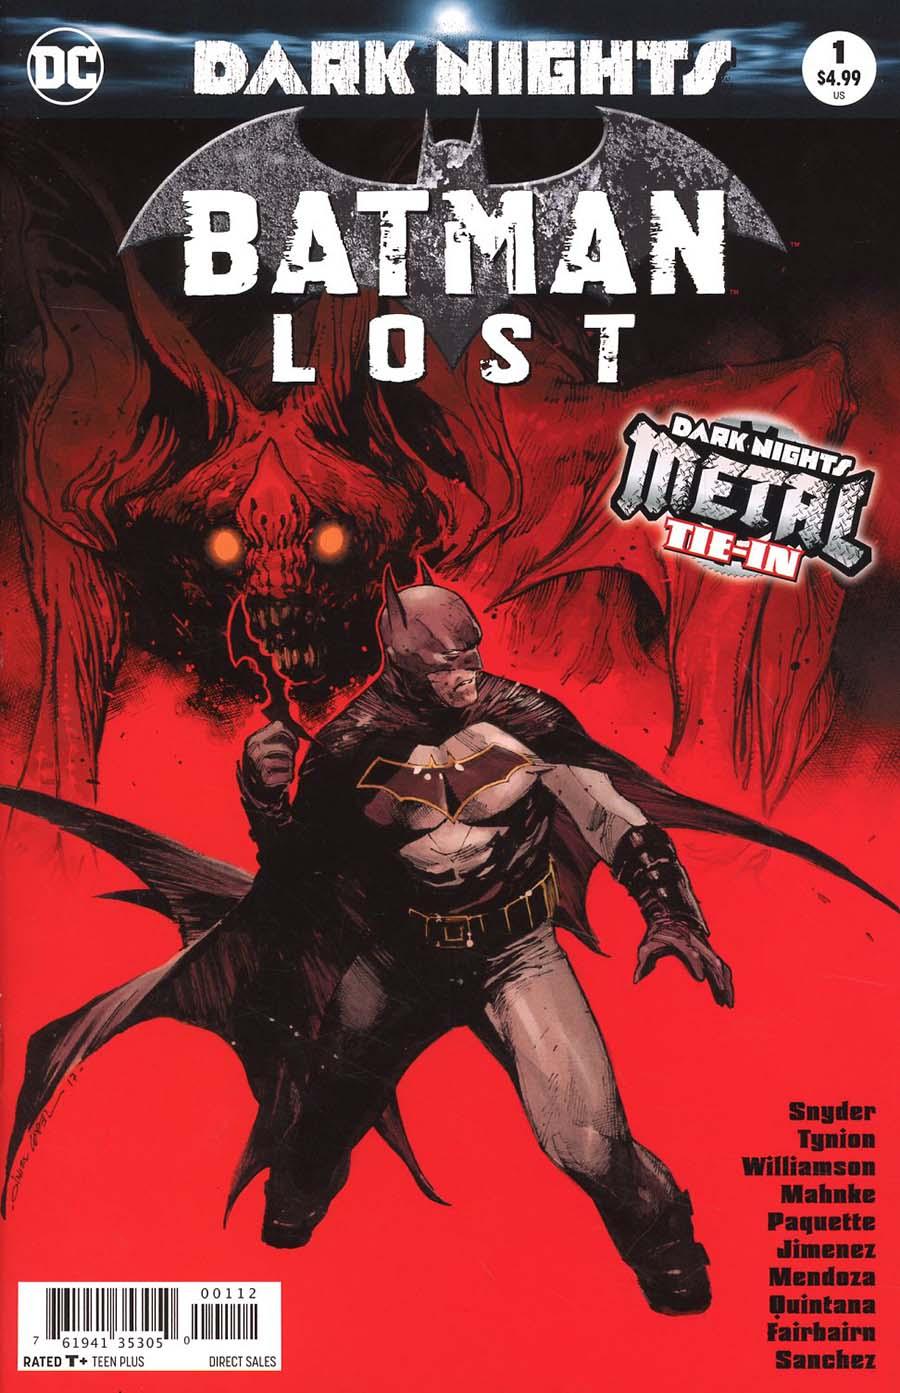 Batman Lost Vol. 1 #1